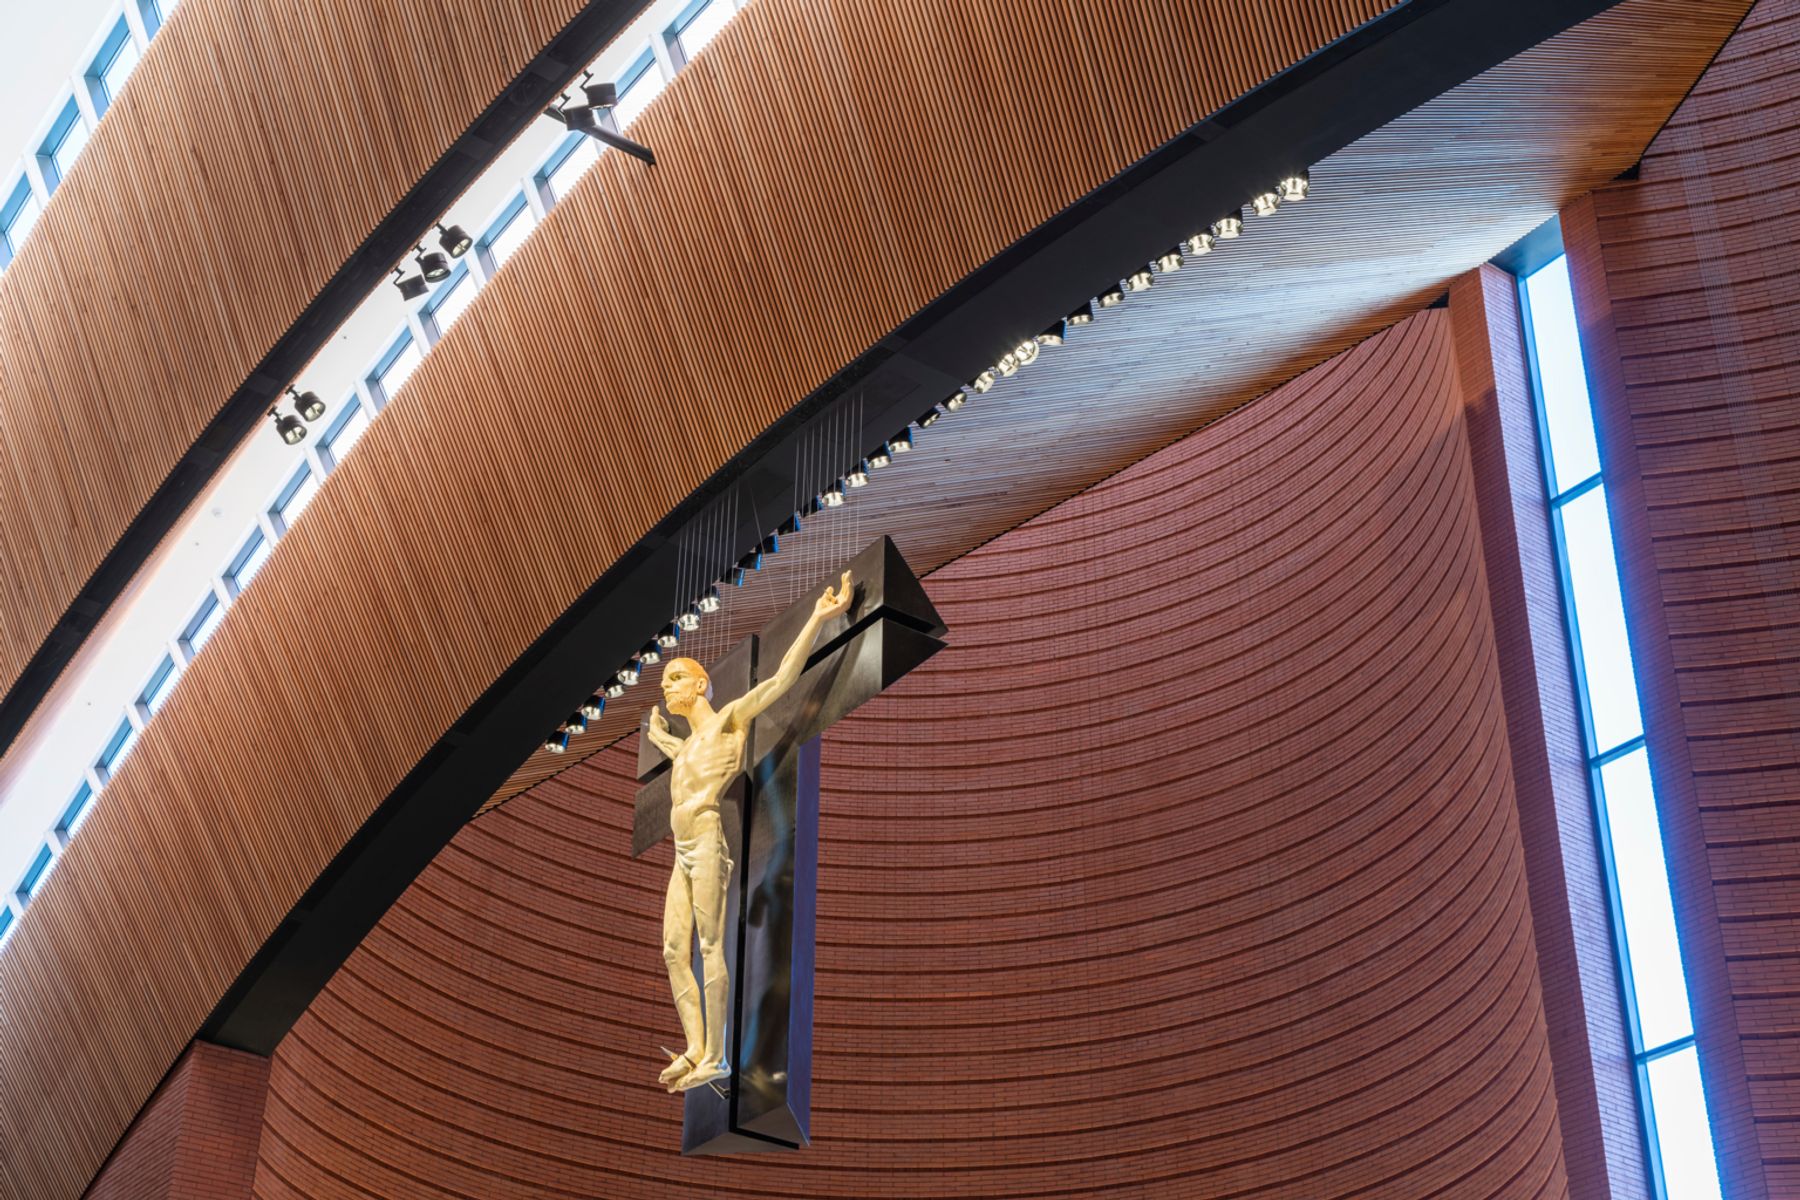 The Shrine of our Lady Rosary of NamYang, Corée du Sud. Architecte : Mario Botta, Mendrisio. Conception lumière : bitzro & partners, Séoul. Photographie : Efrain Mendez Tabares, Espagne